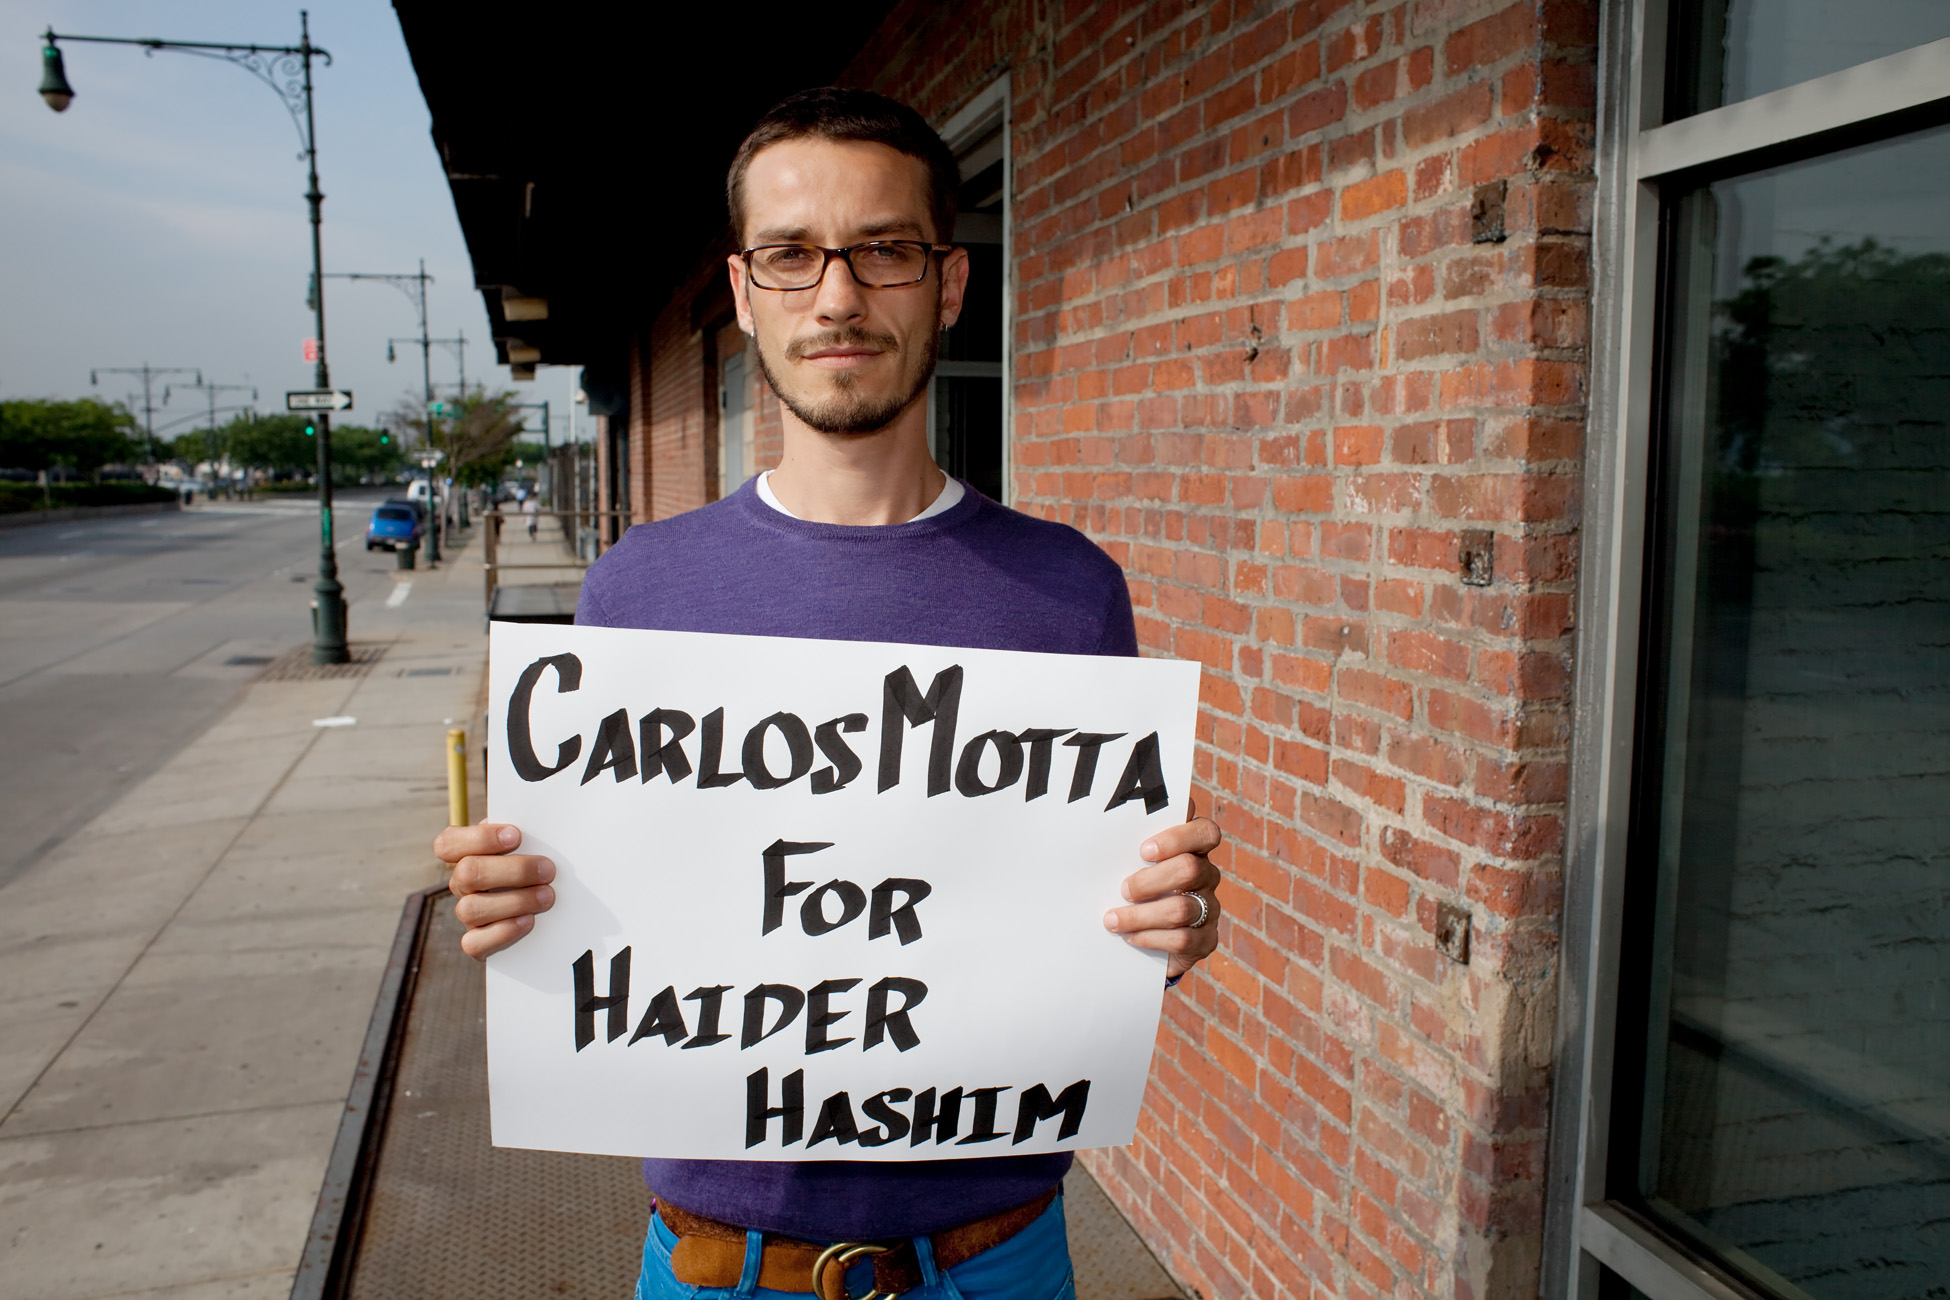 Carlos Motta for Haider Hashim